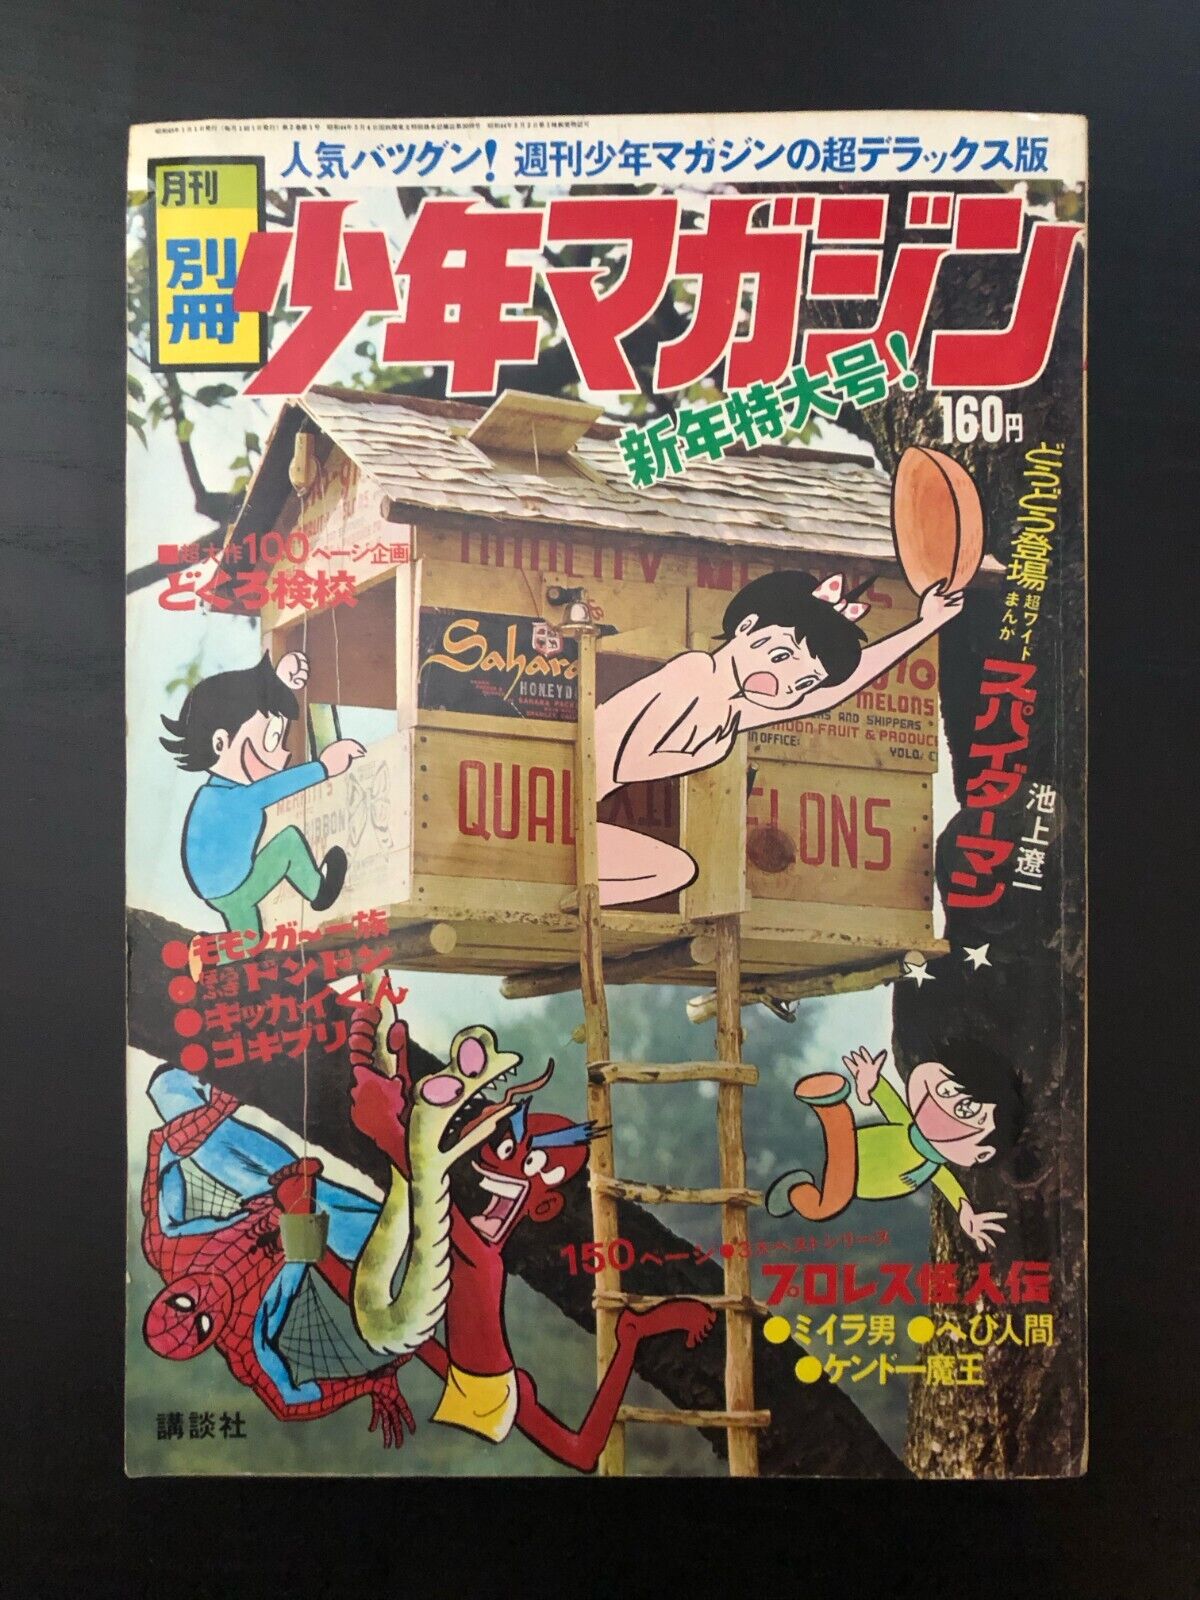 1st appearance of Japanese Spider-Man 1970 HOLY GRAIL Shonen Magazine LICENSED